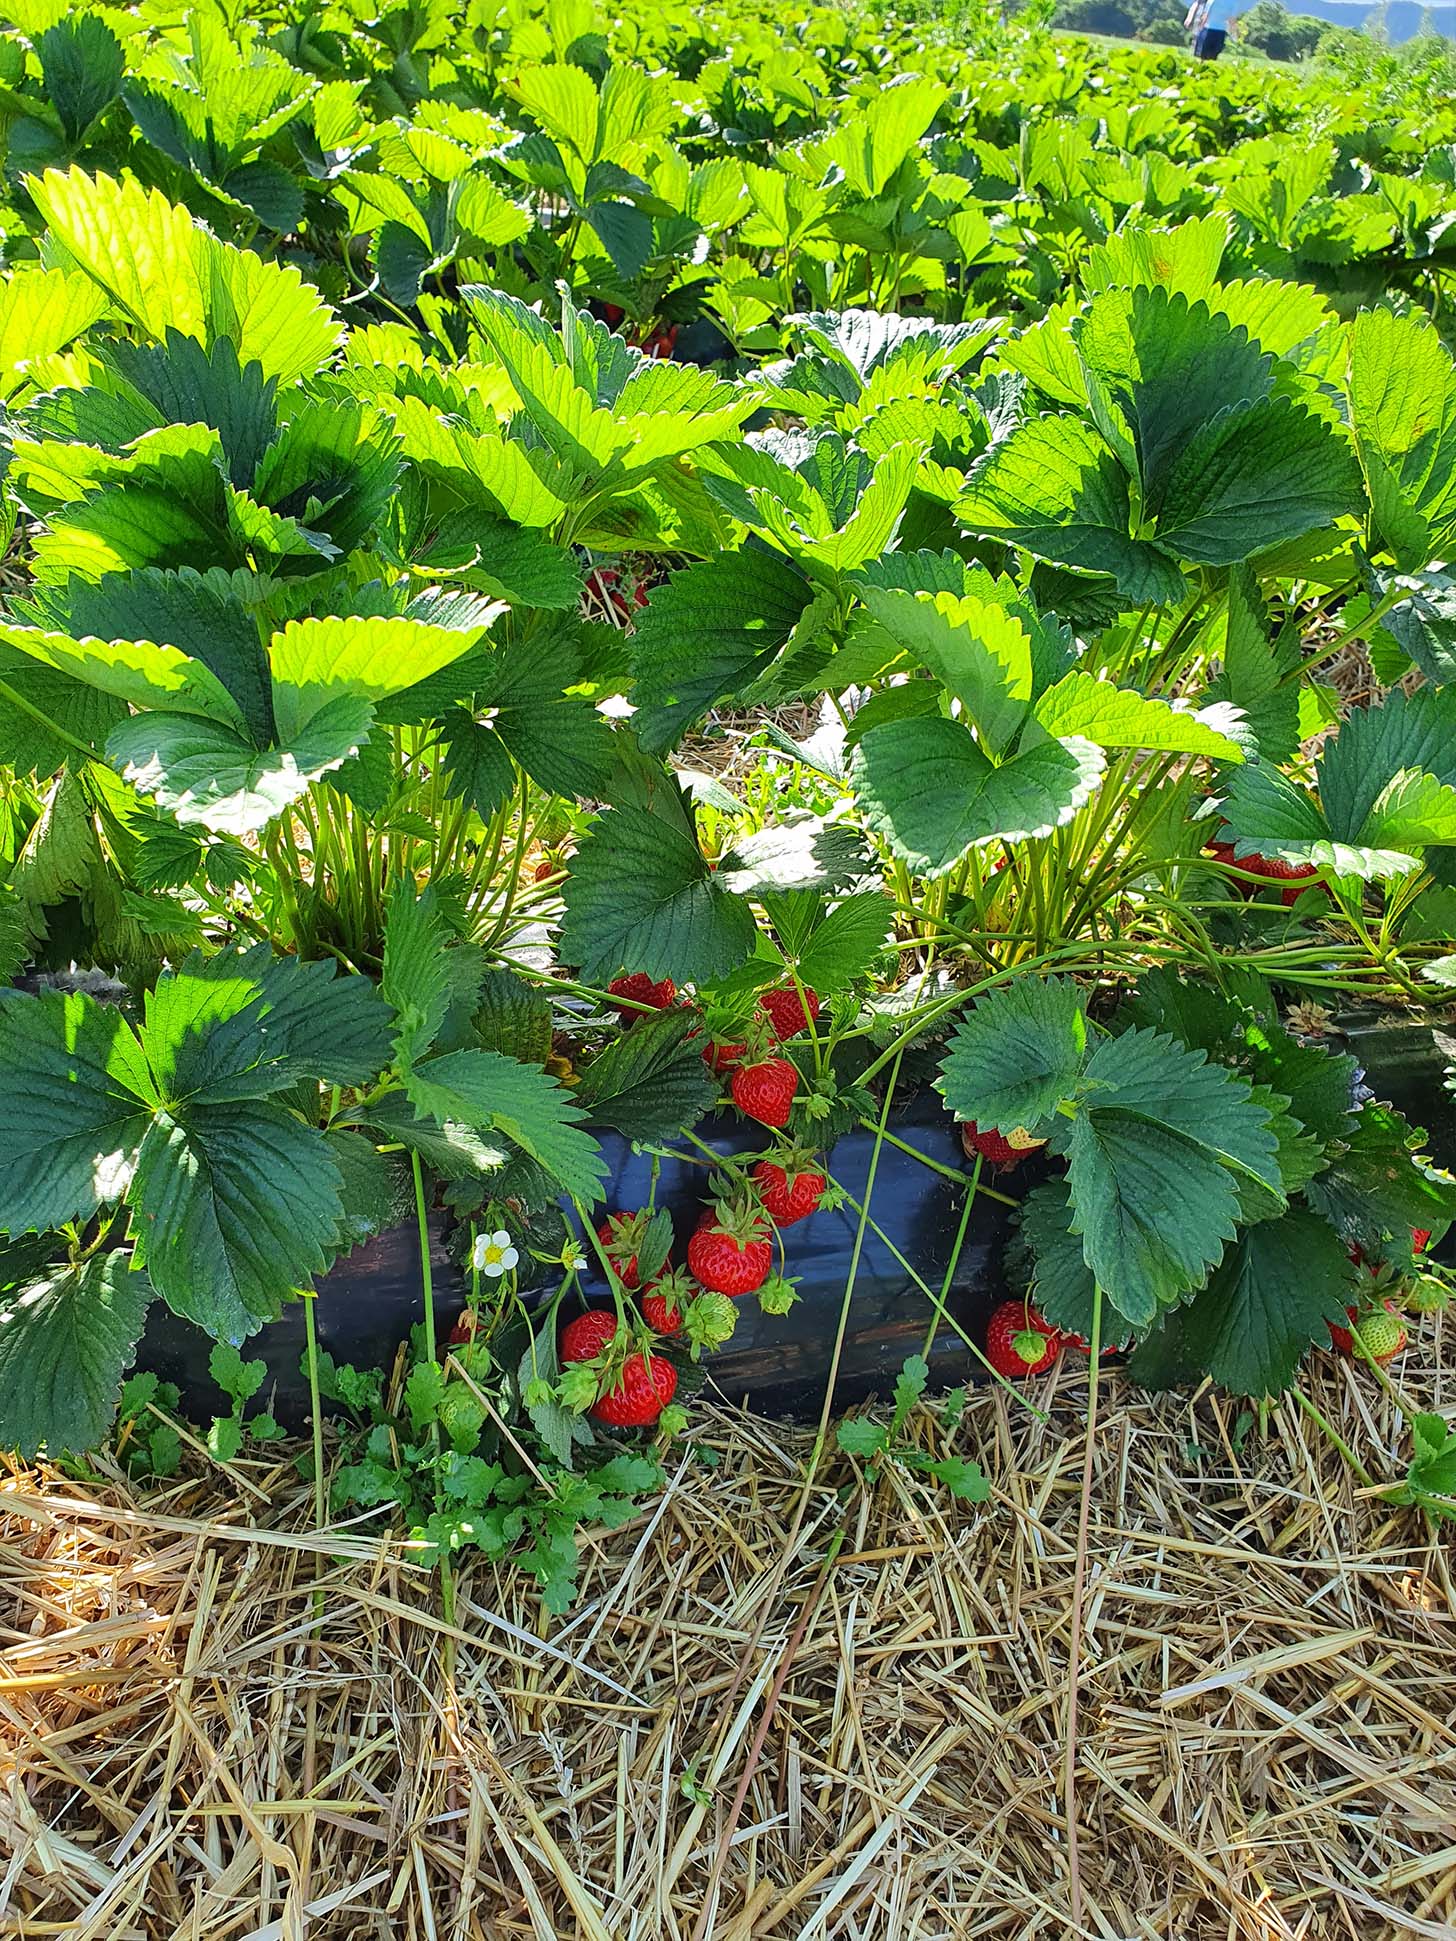 wie lecker die Erdbeeren aussehen